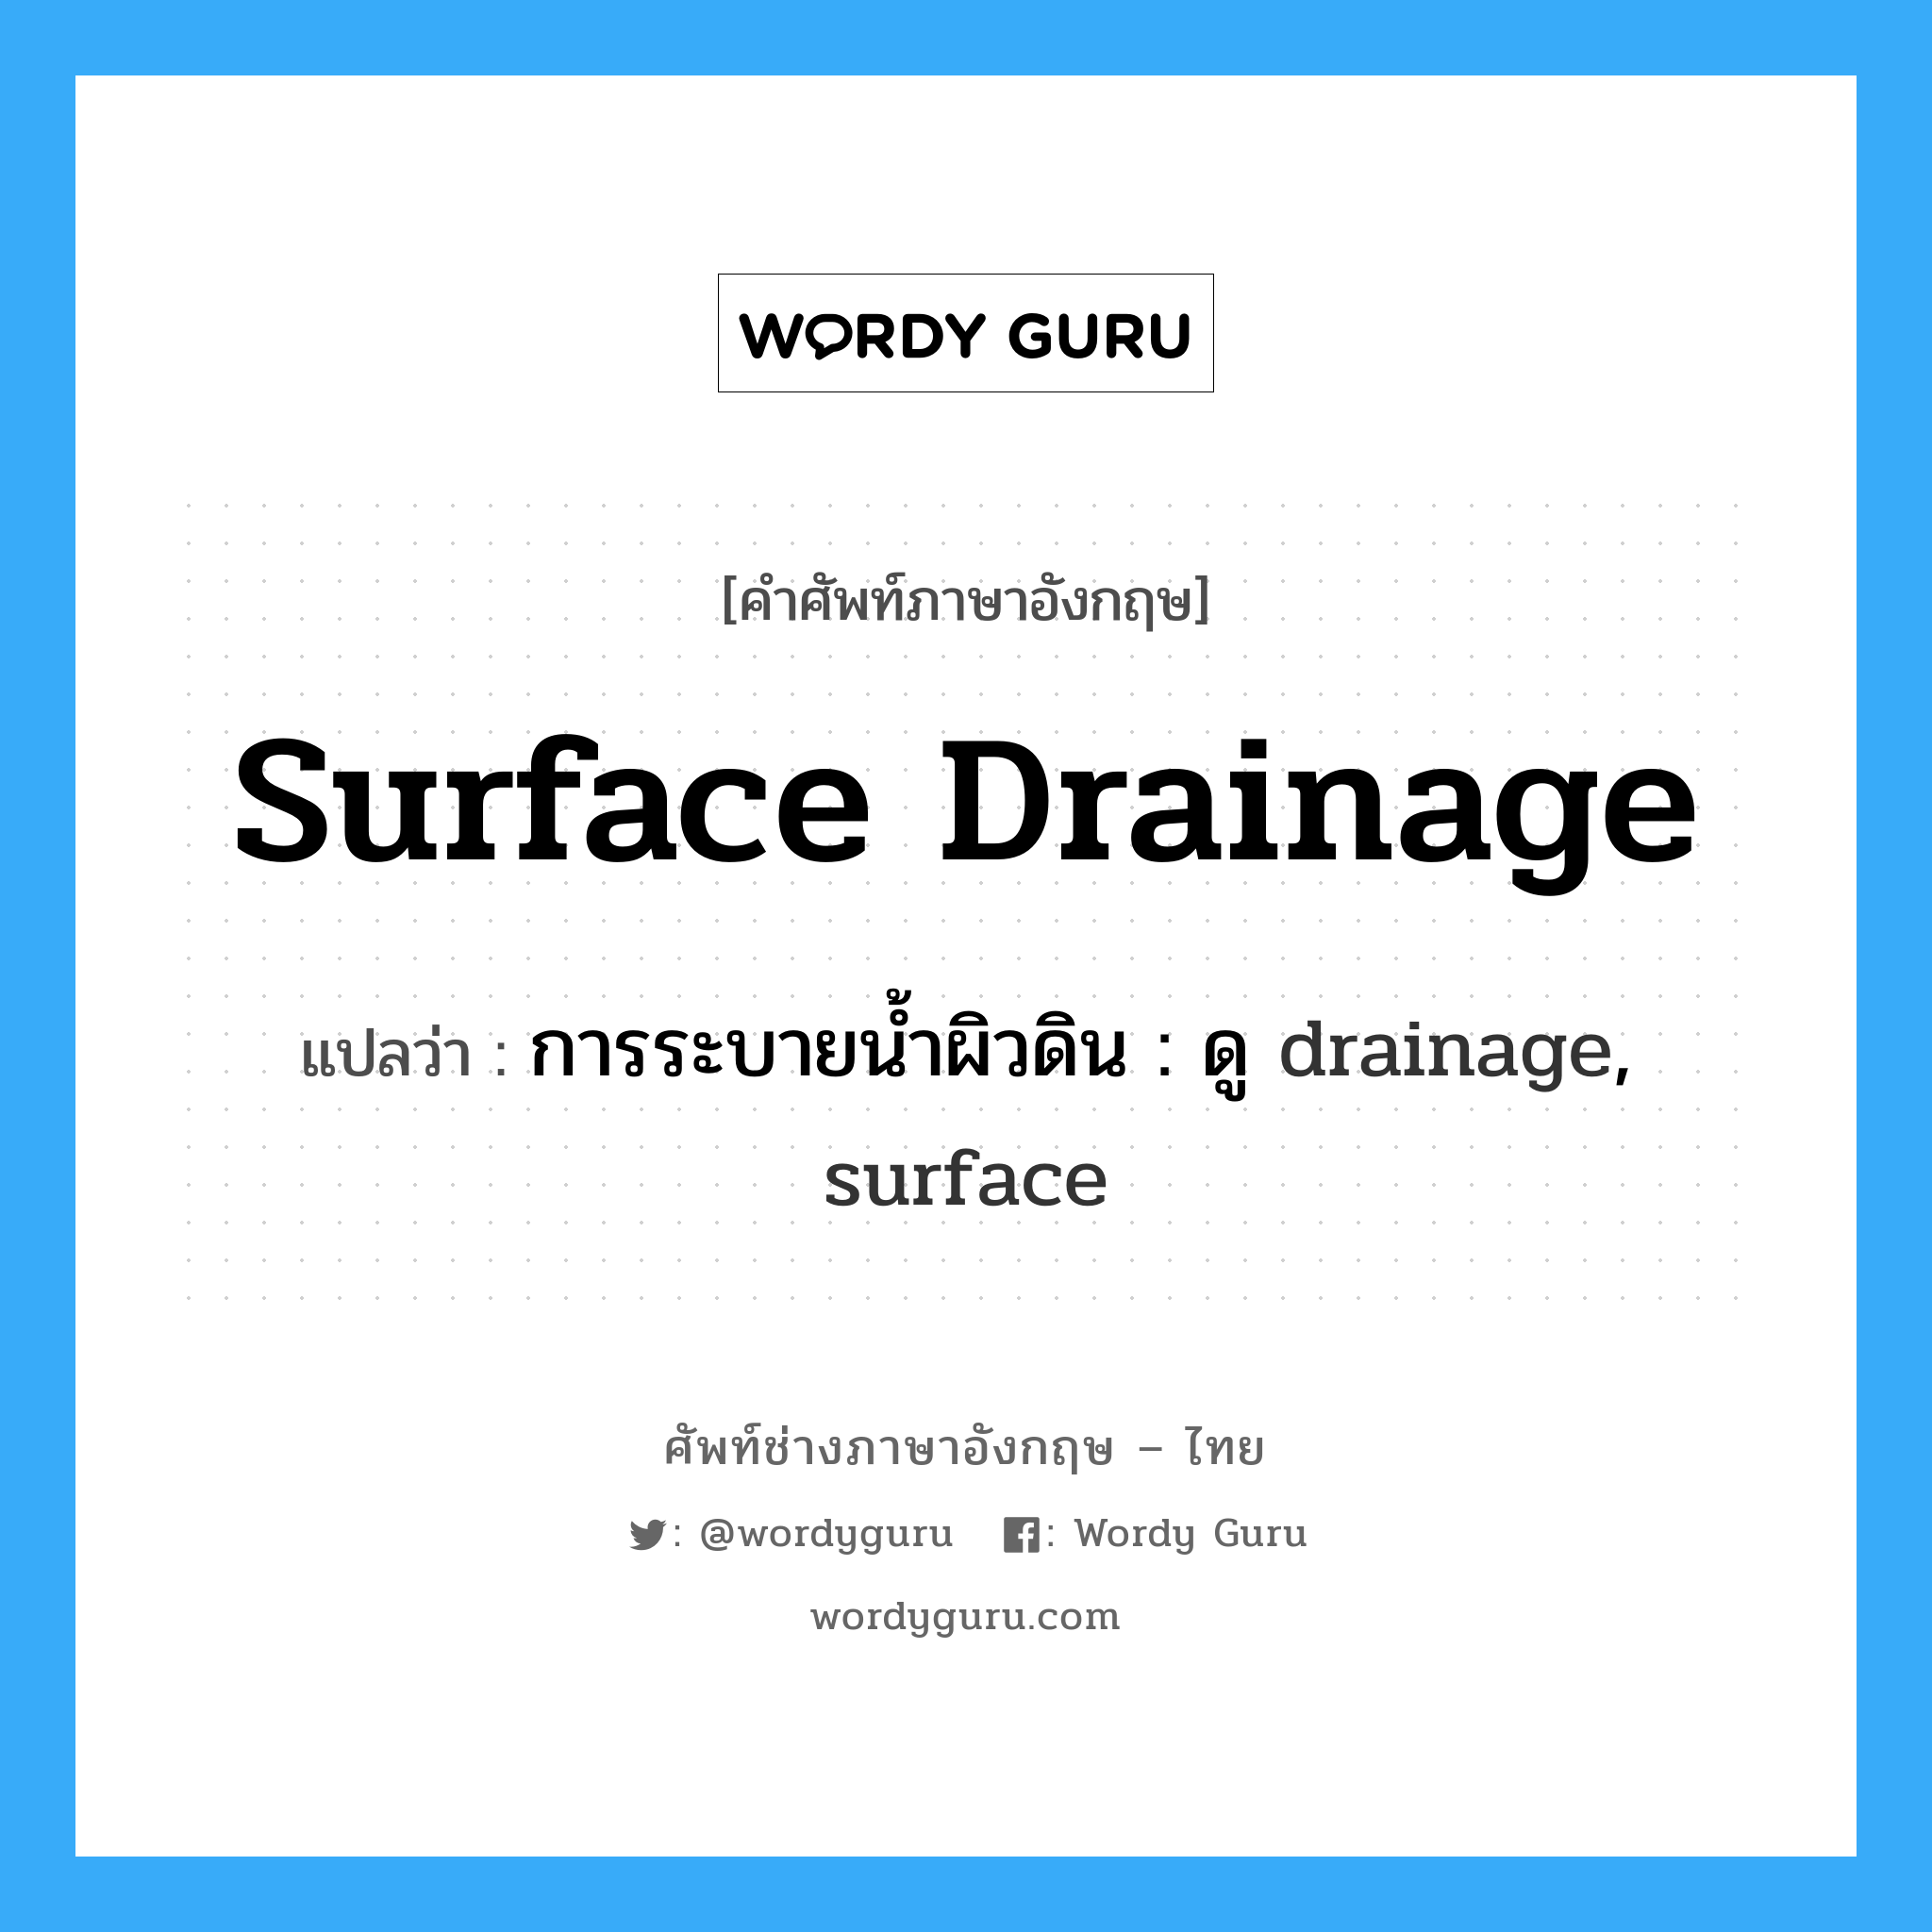 การระบายน้ำผิวดิน : ดู drainage, surface ภาษาอังกฤษ?, คำศัพท์ช่างภาษาอังกฤษ - ไทย การระบายน้ำผิวดิน : ดู drainage, surface คำศัพท์ภาษาอังกฤษ การระบายน้ำผิวดิน : ดู drainage, surface แปลว่า surface drainage